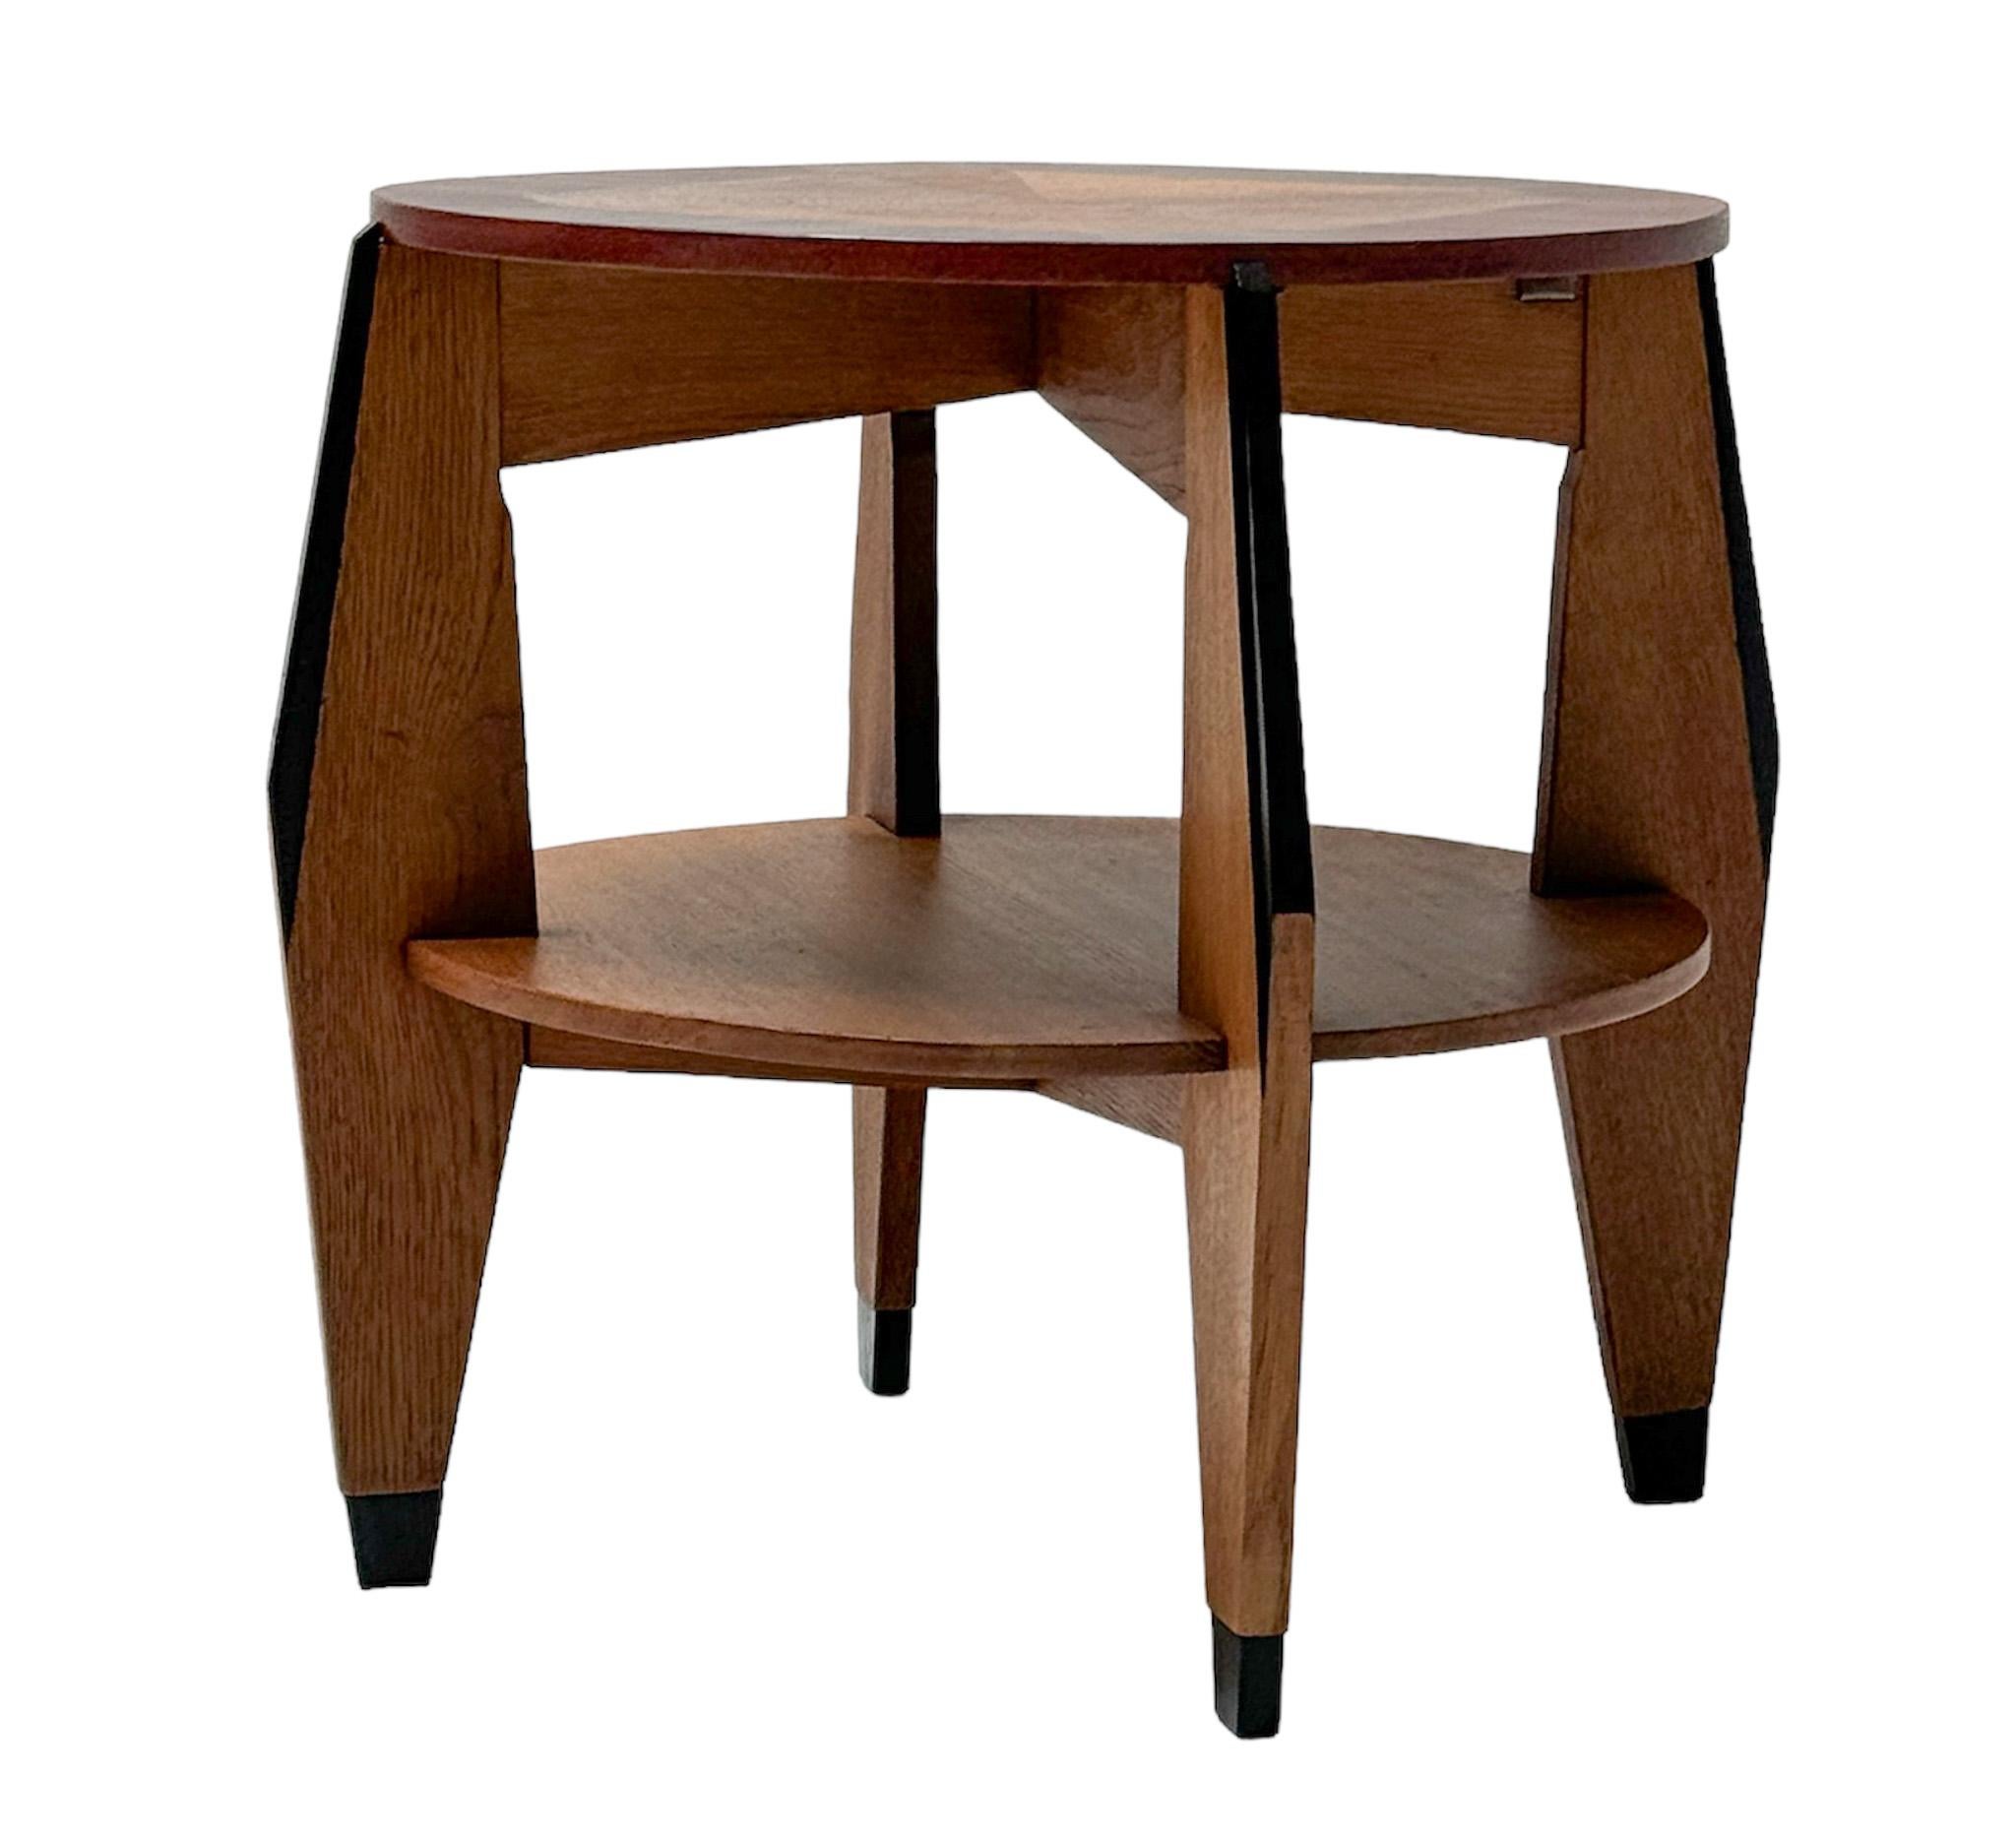  Art Deco Modernist Oak Side Table by P.E.L. Izeren for De Genneper Molen, 1920s For Sale 2